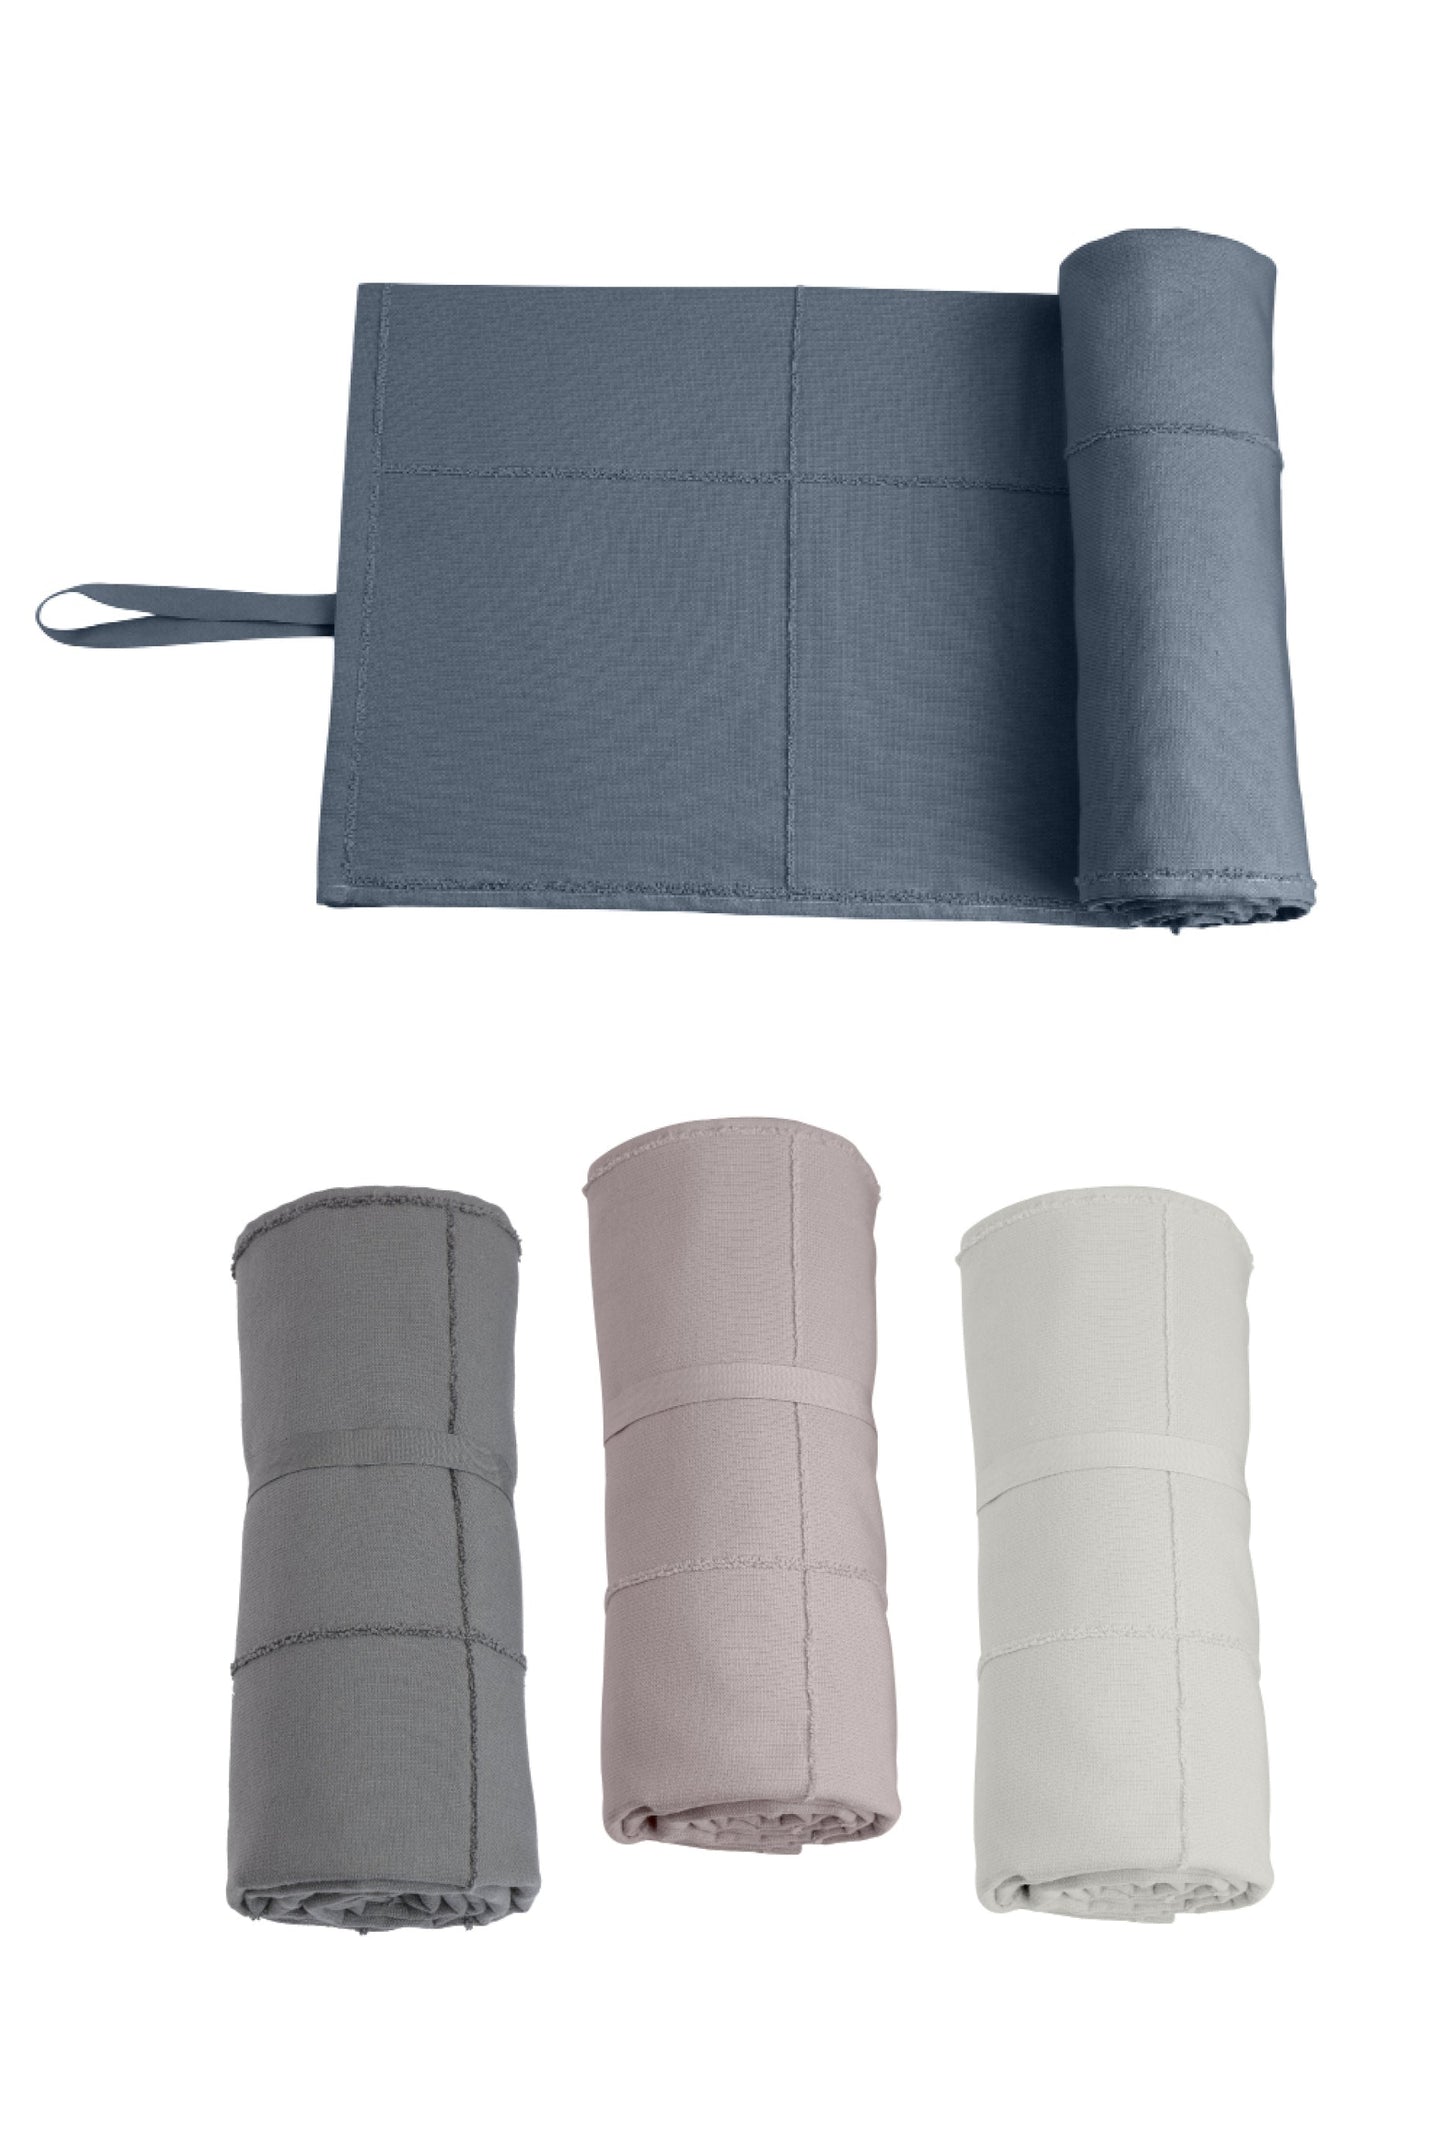 Calm towel To go - Lavender (60x120)